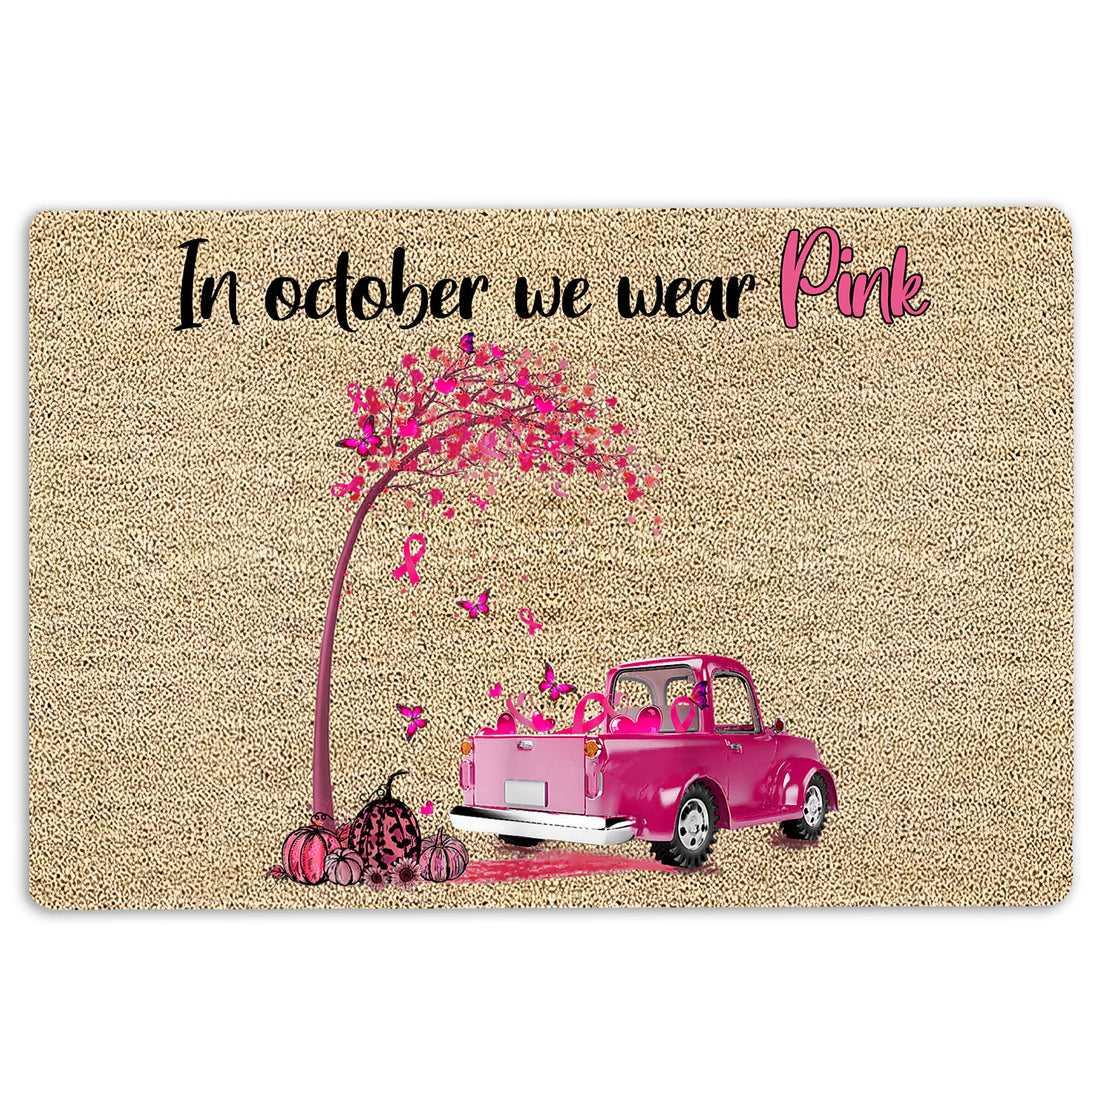 Ohaprints-Doormat-Outdoor-Indoor-Breast-Cancer-Awareness-In-October-We-Wear-Pink-Ribbon-Rubber-Door-Mat-1903-18'' x 30''